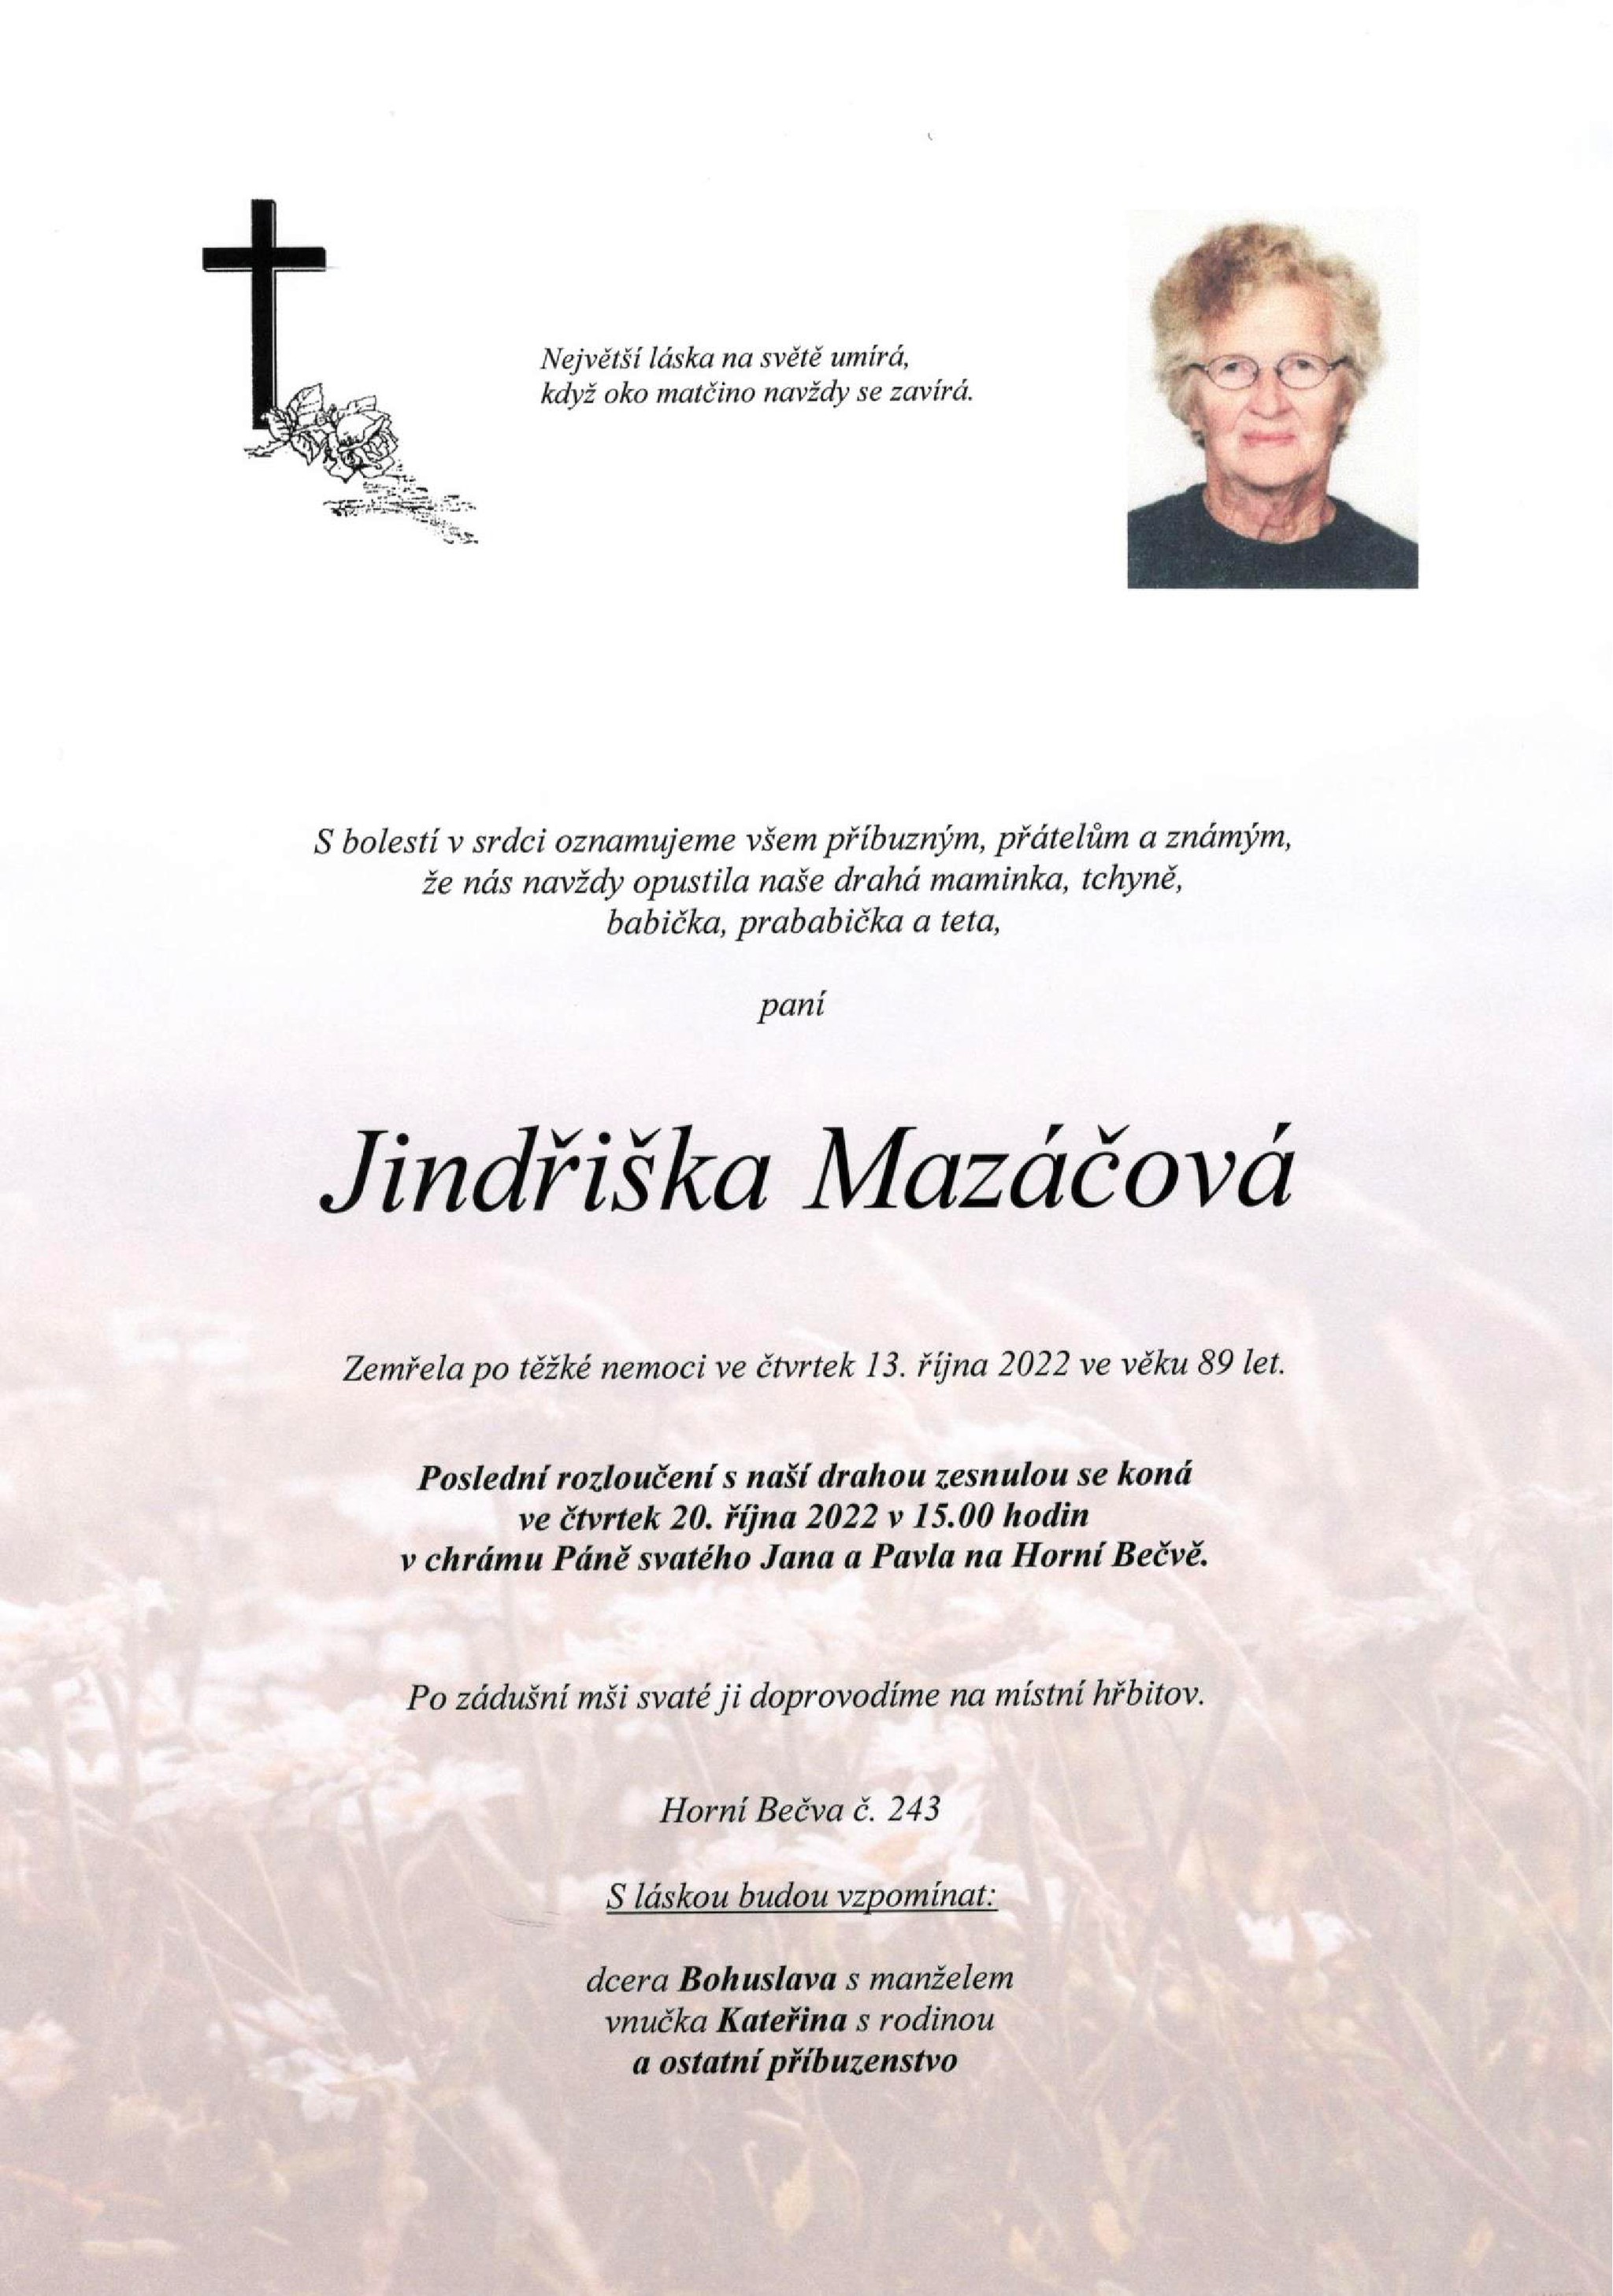 Jindřiška Mazáčová